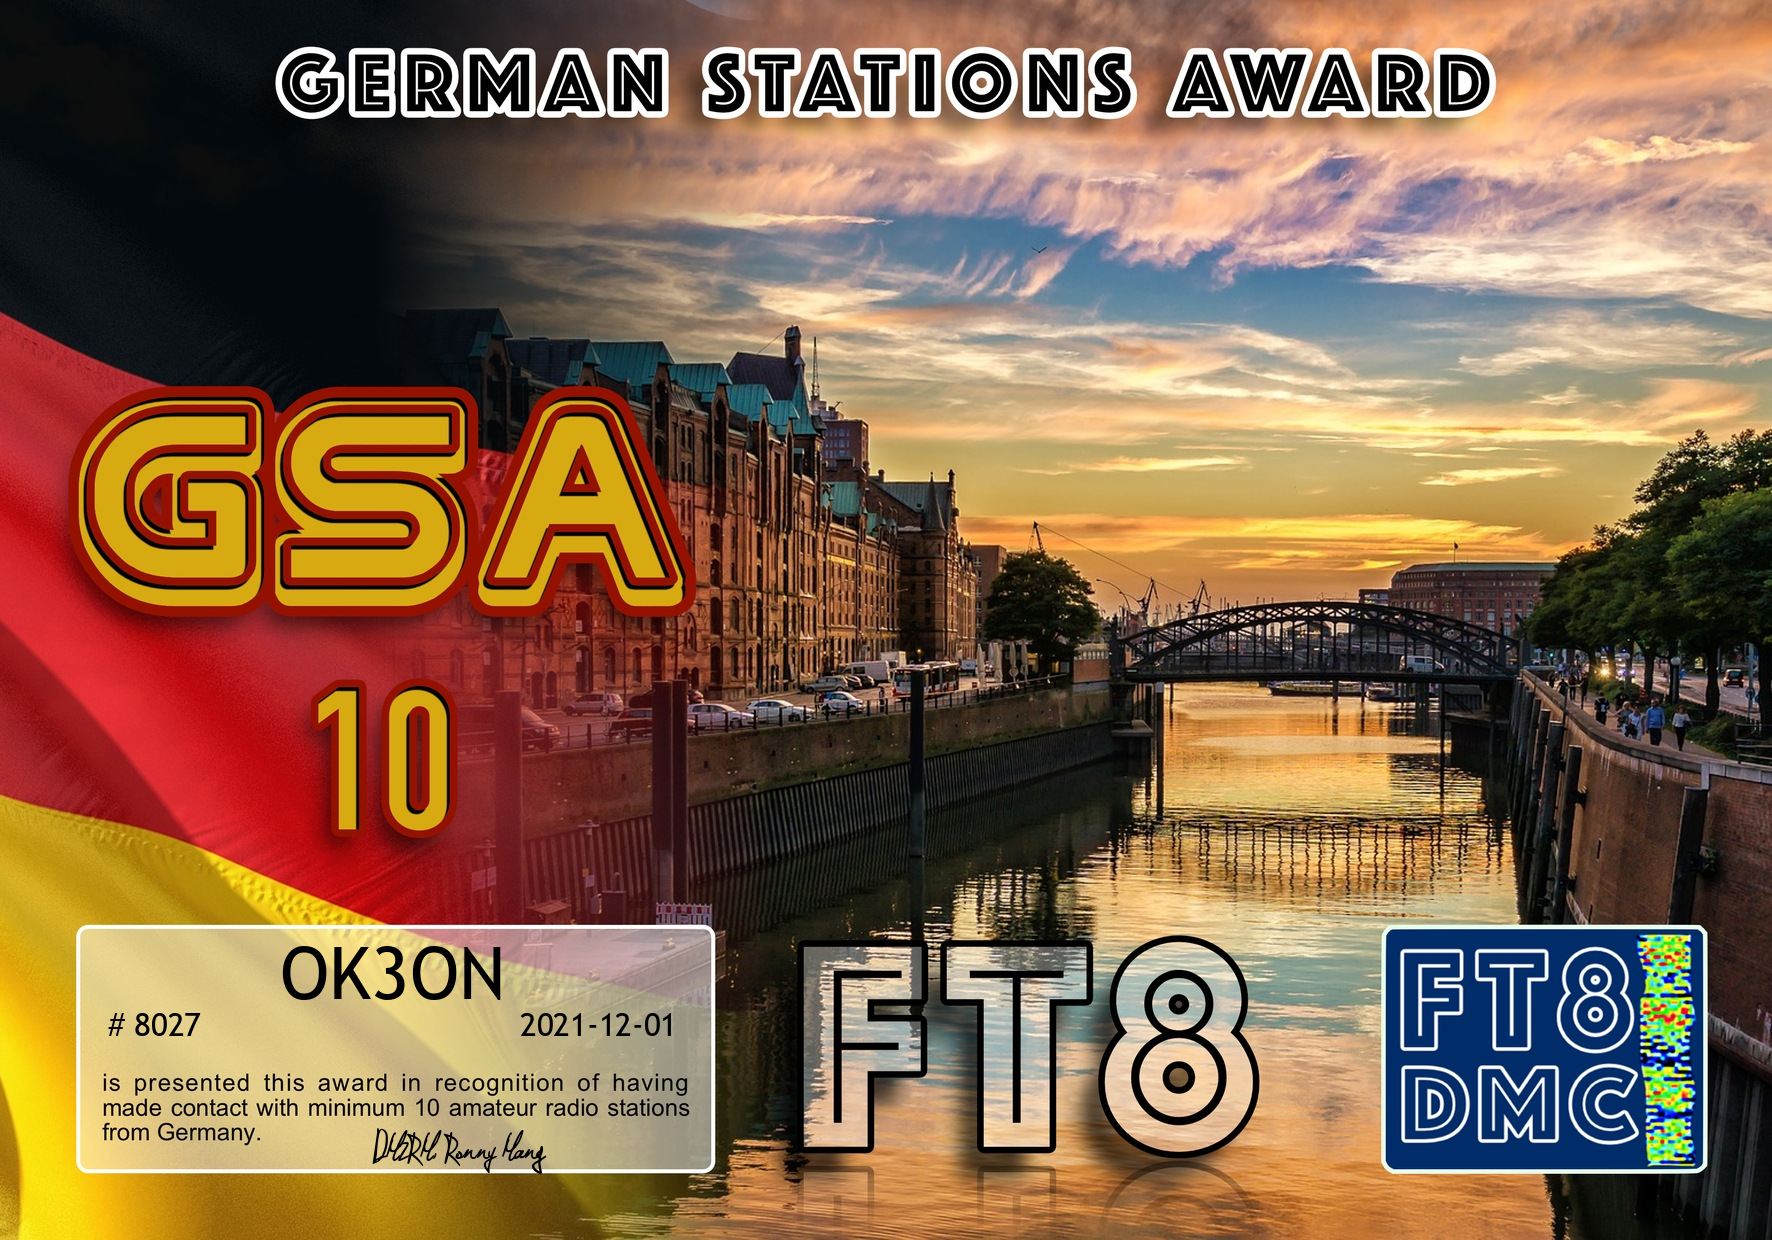 awards/OK3ON-GSA-III_FT8DMC.jpg